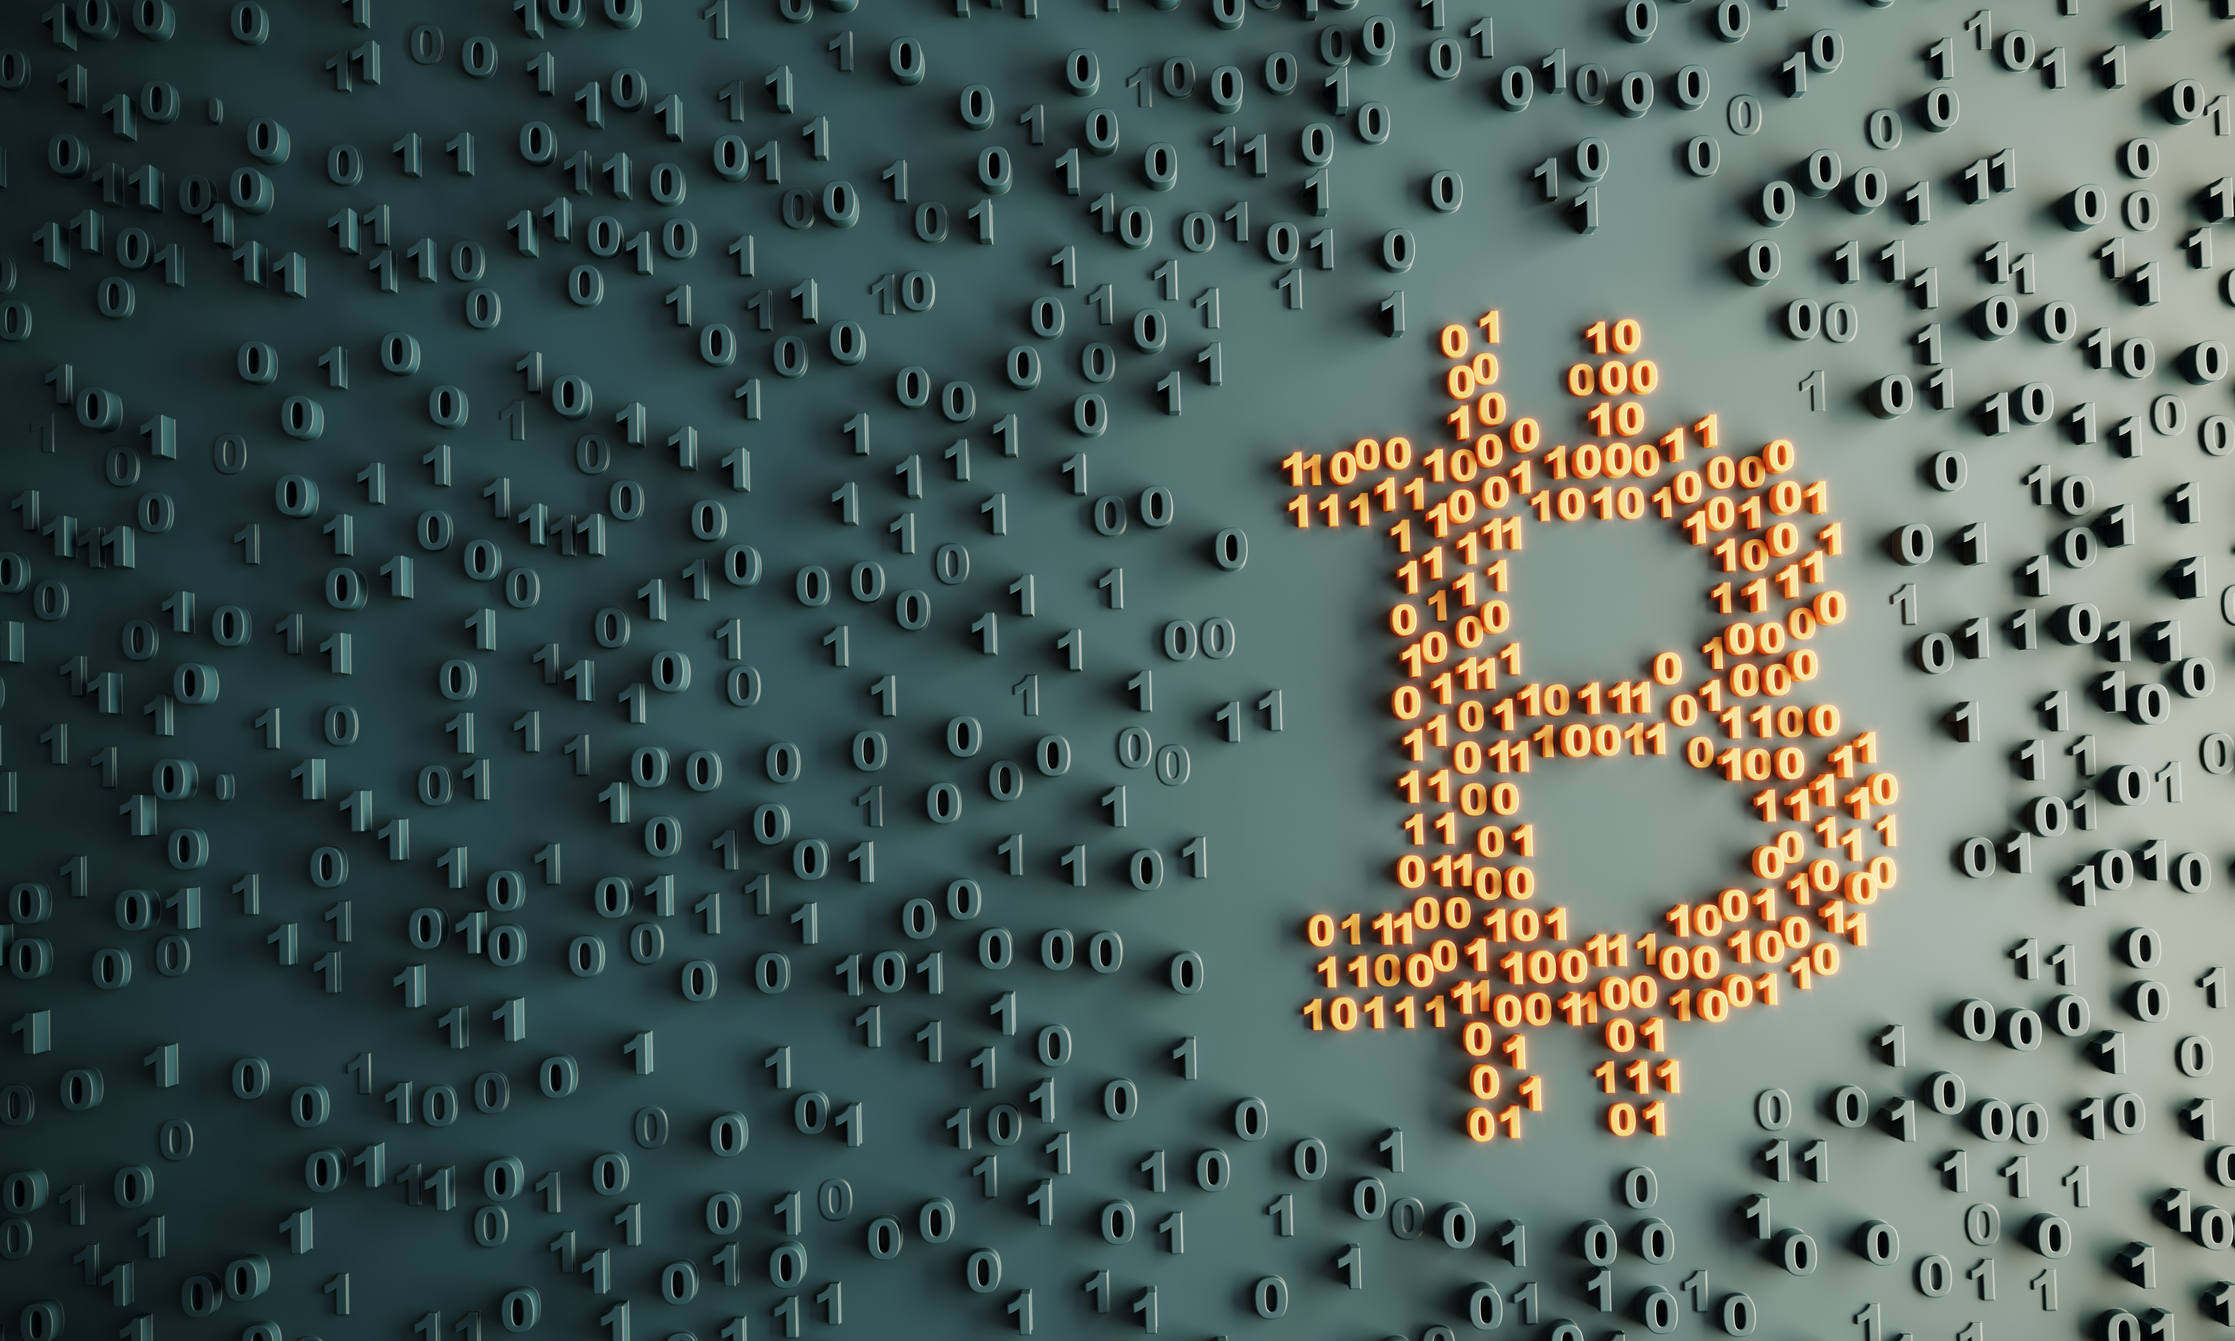 Investidores de Bitcoin com foco no longo prazo se mostram resilientes em cenário de forte sell-off